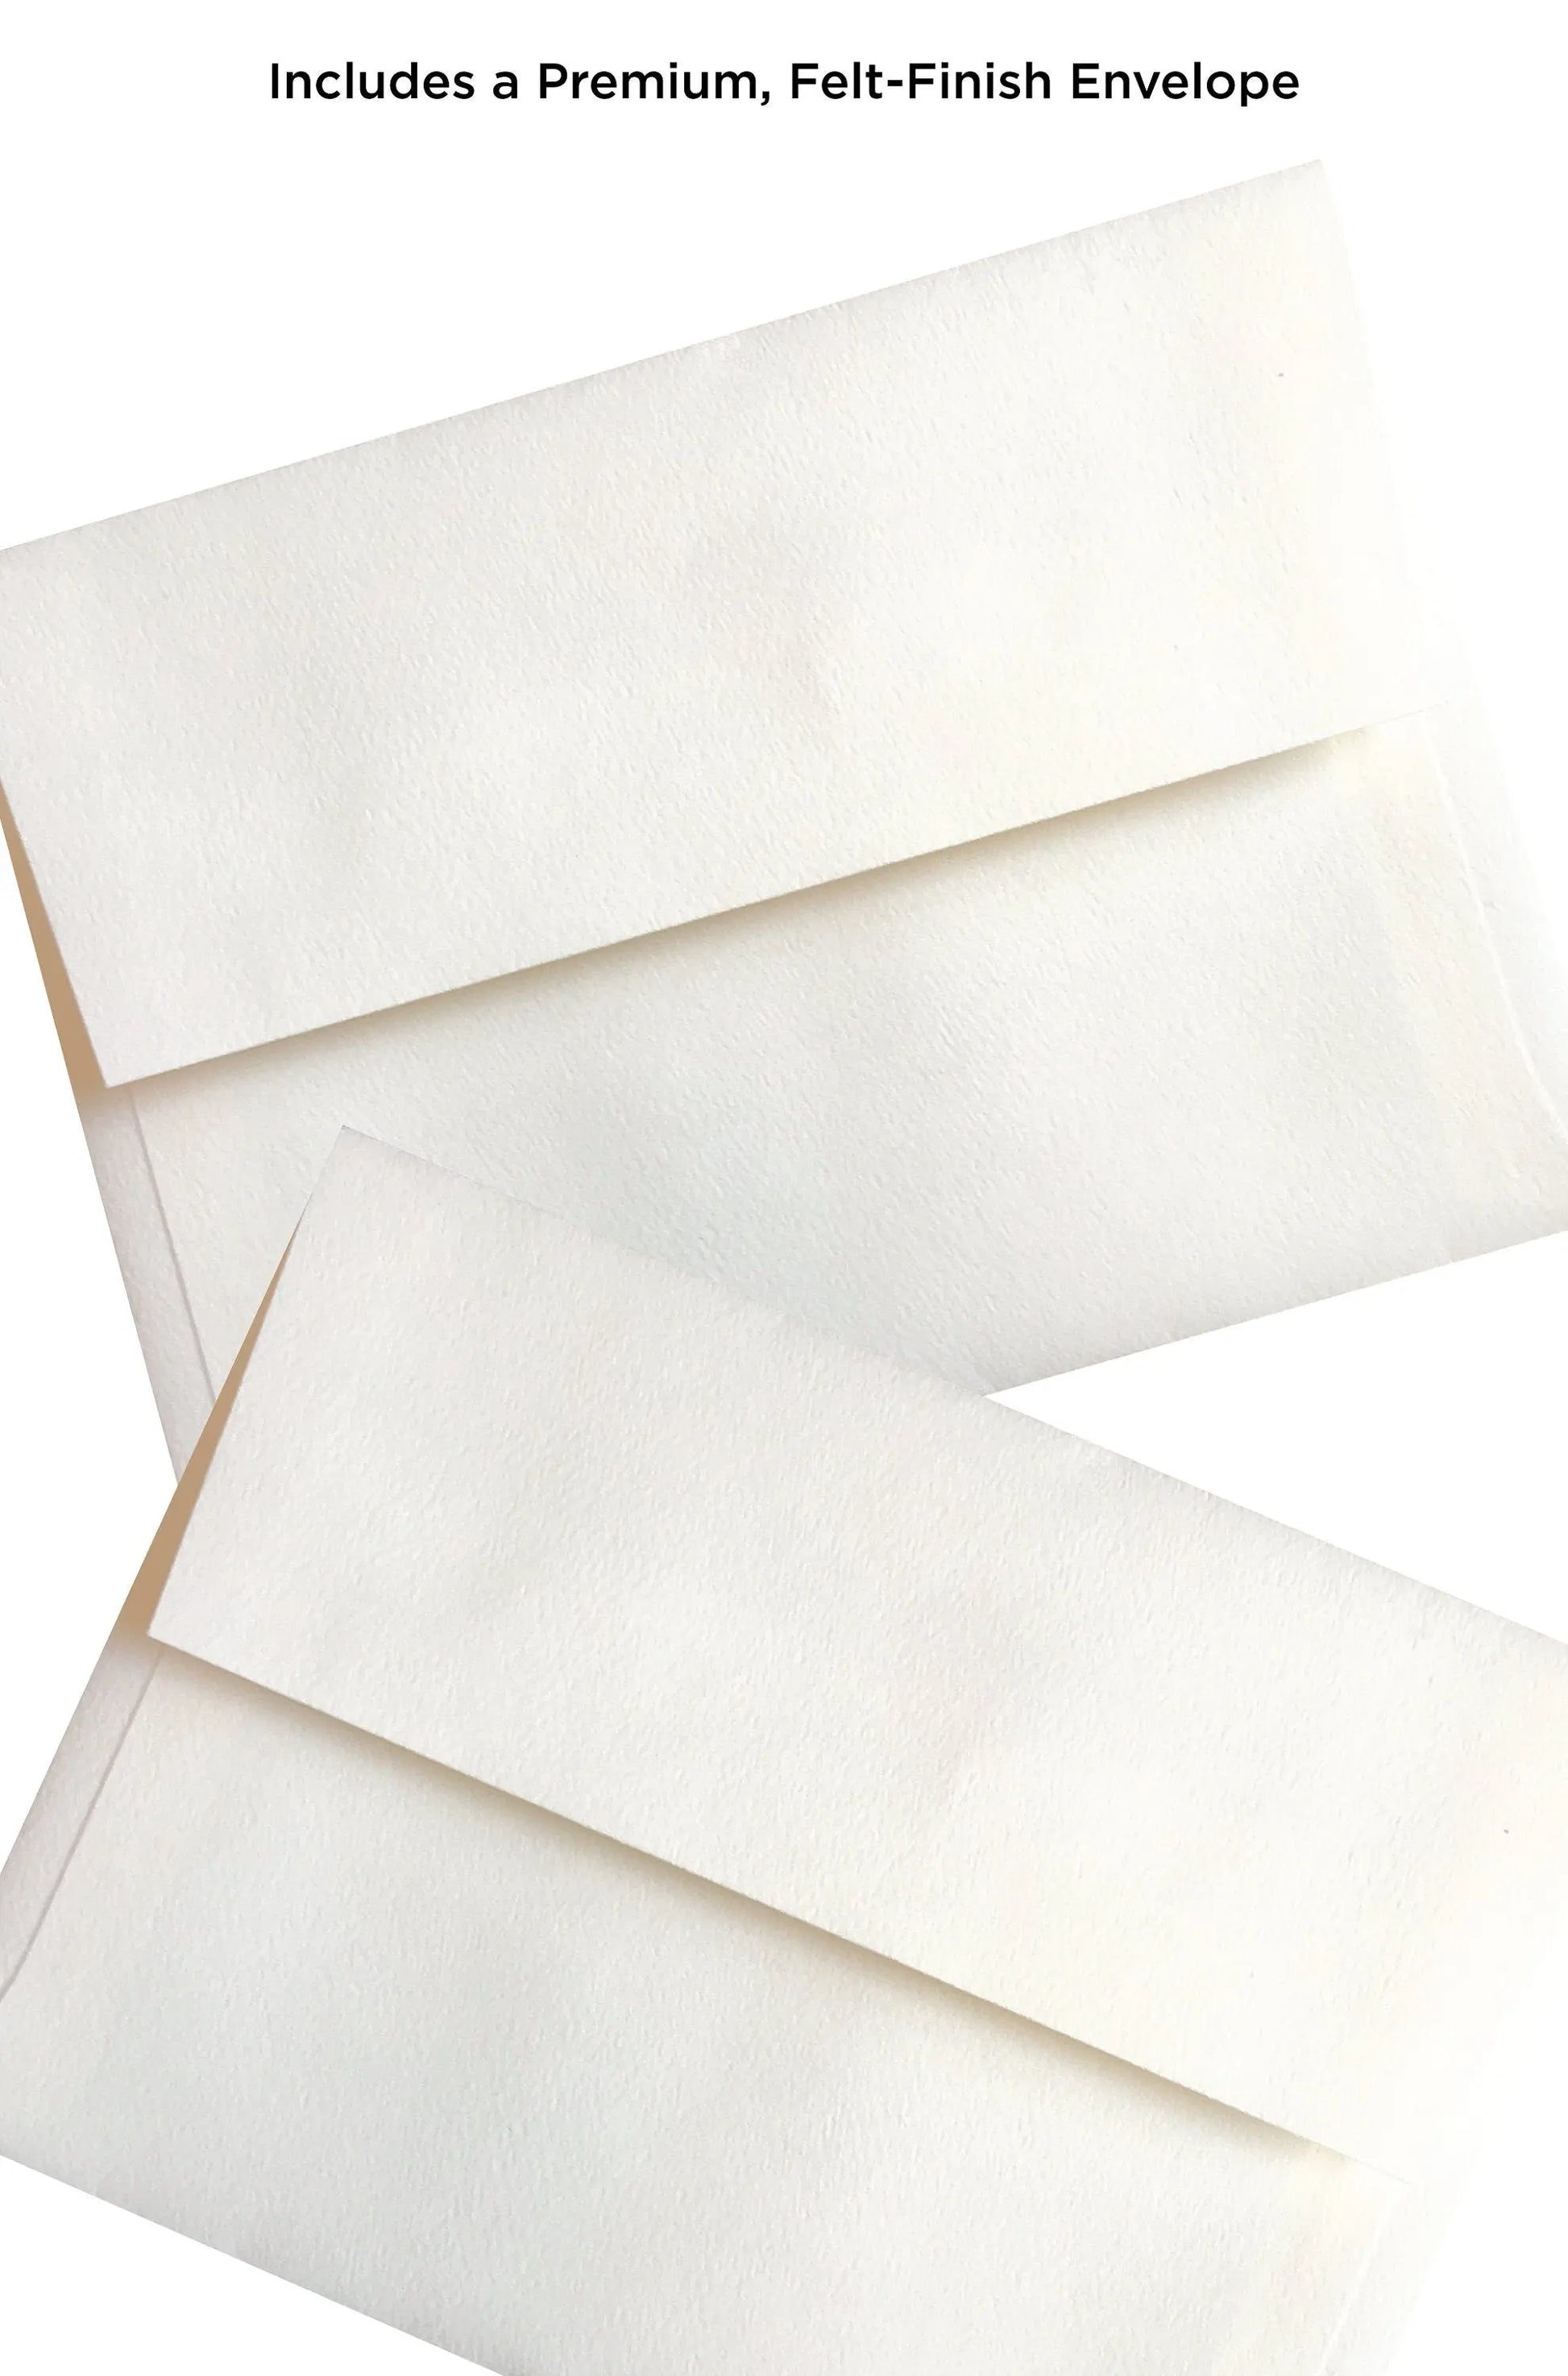 two envelopes